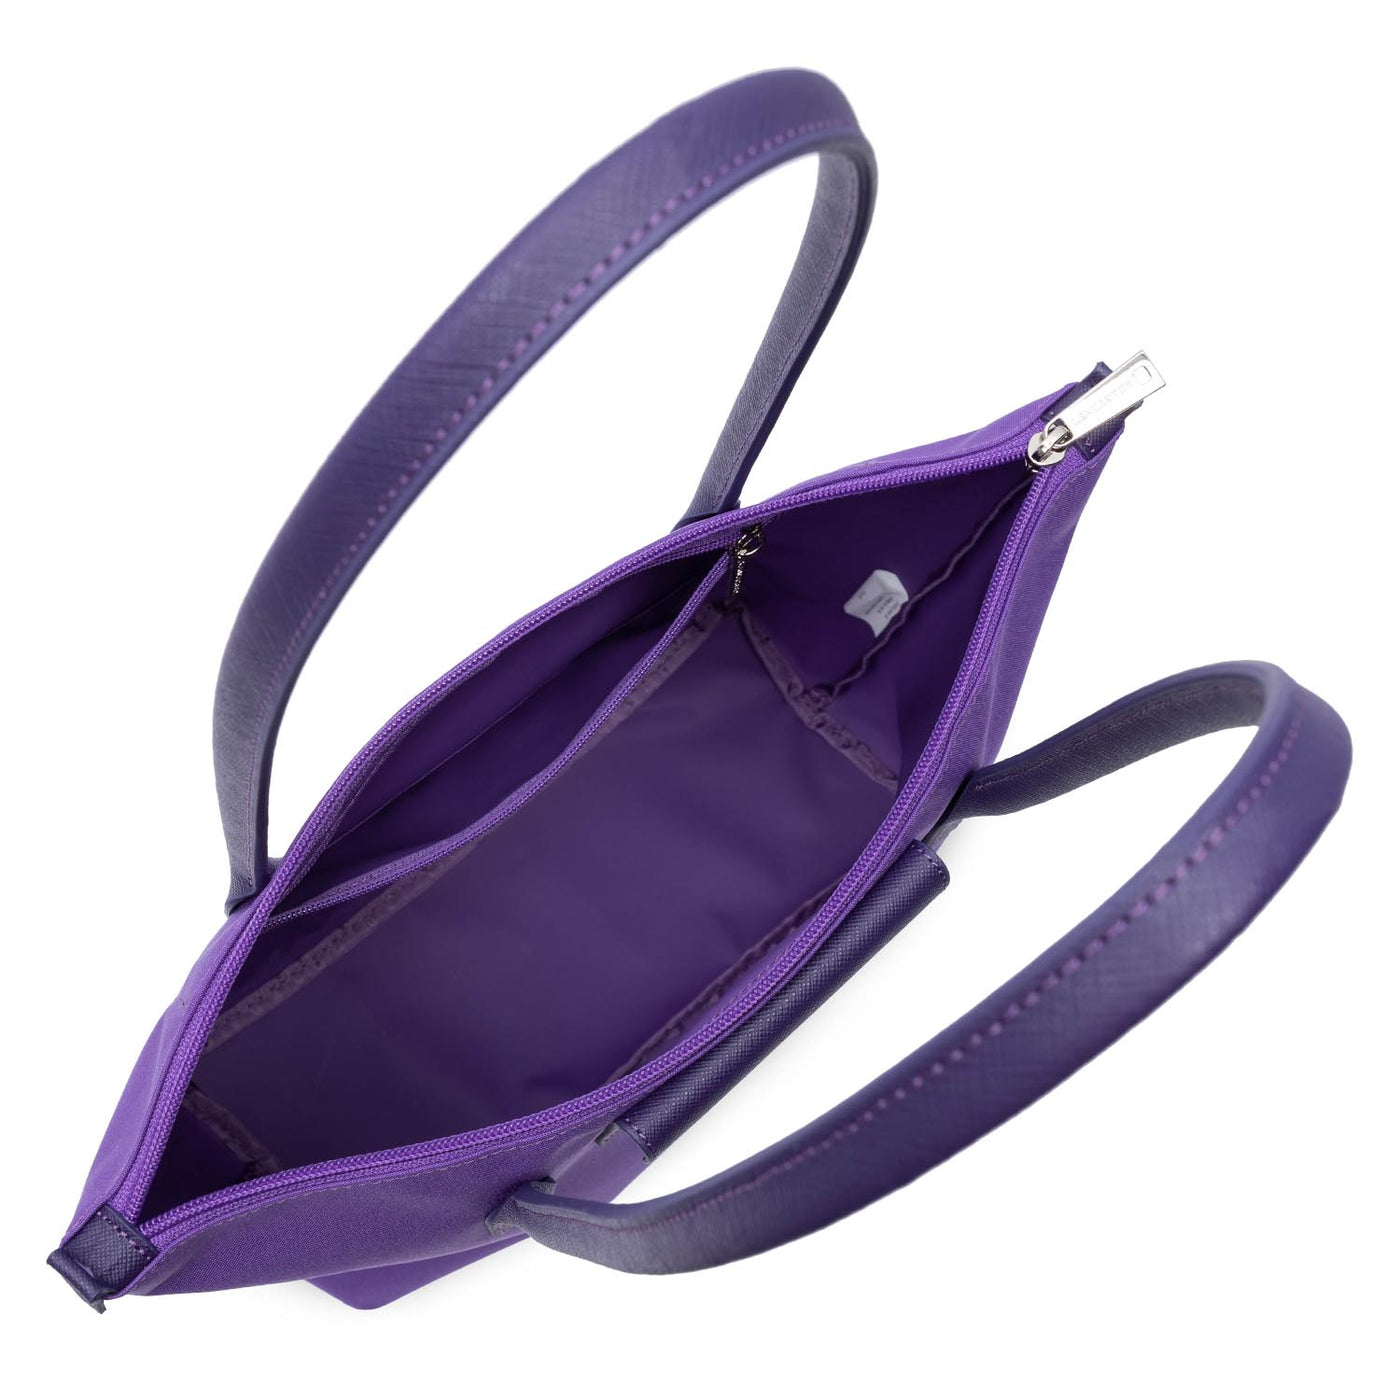 sac cabas épaule - smart kba #couleur_violet